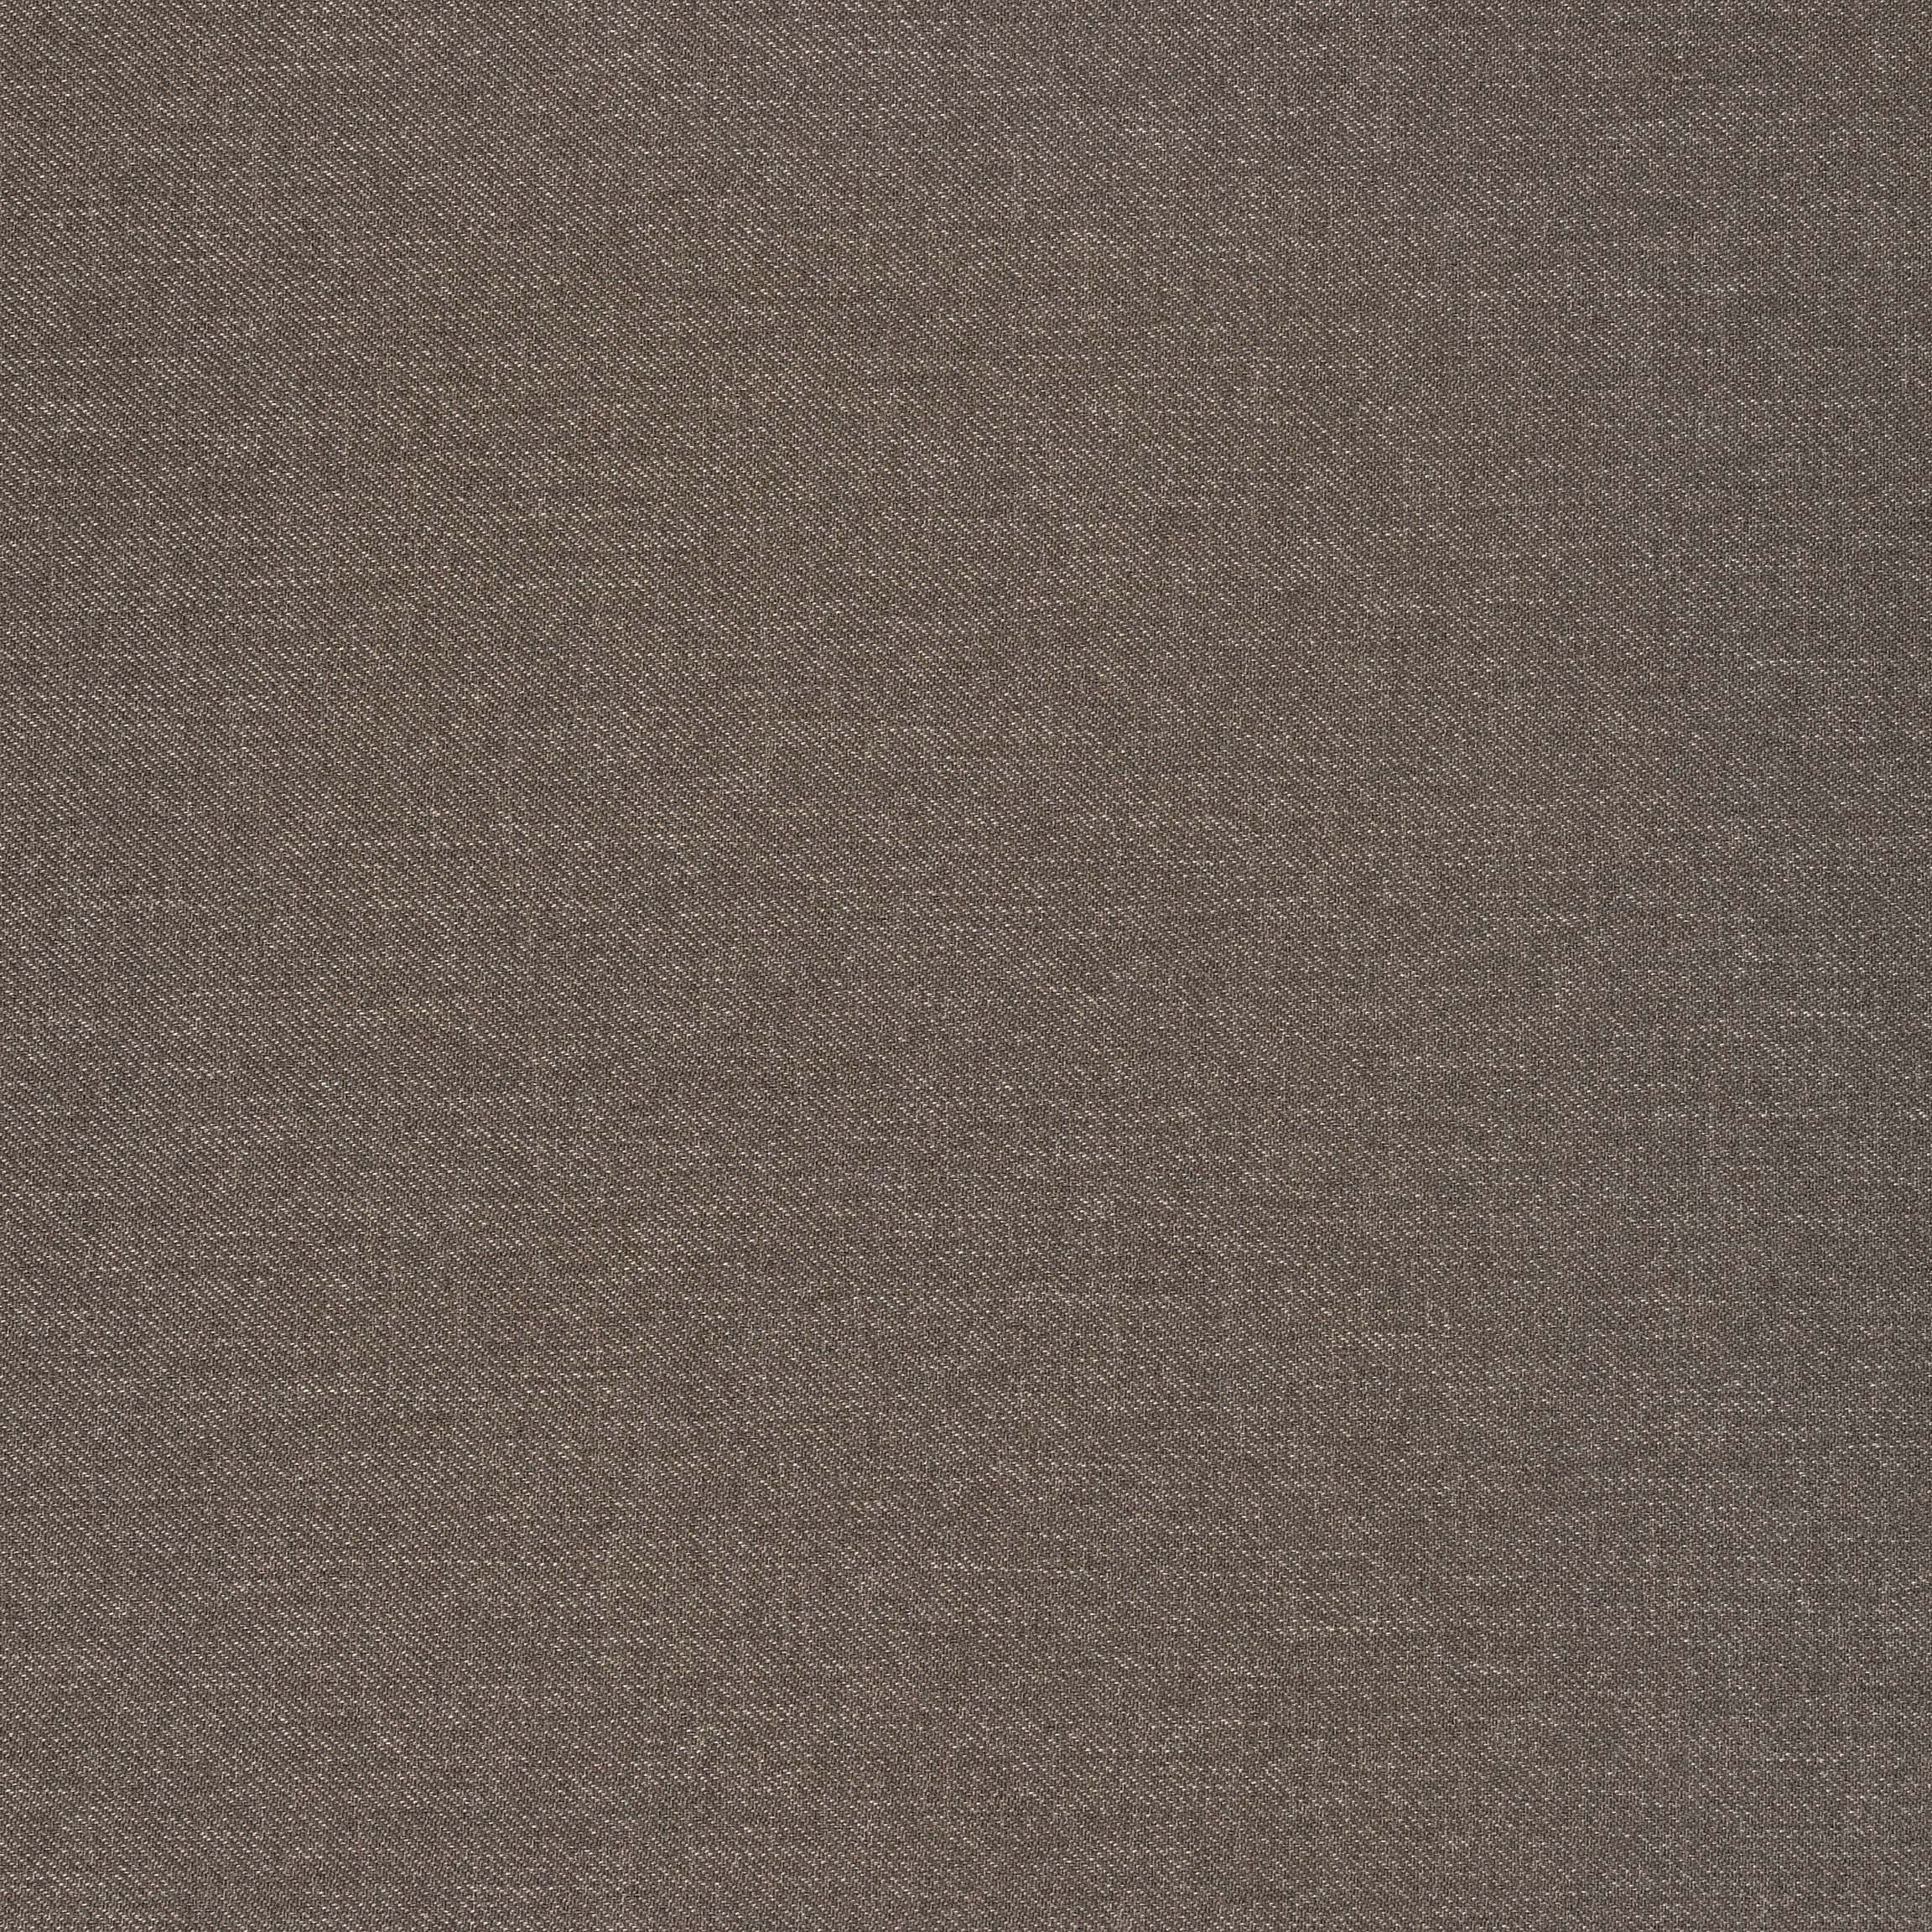  Портьерная ткань SETO FUMA, ширина 280 см  - Фото